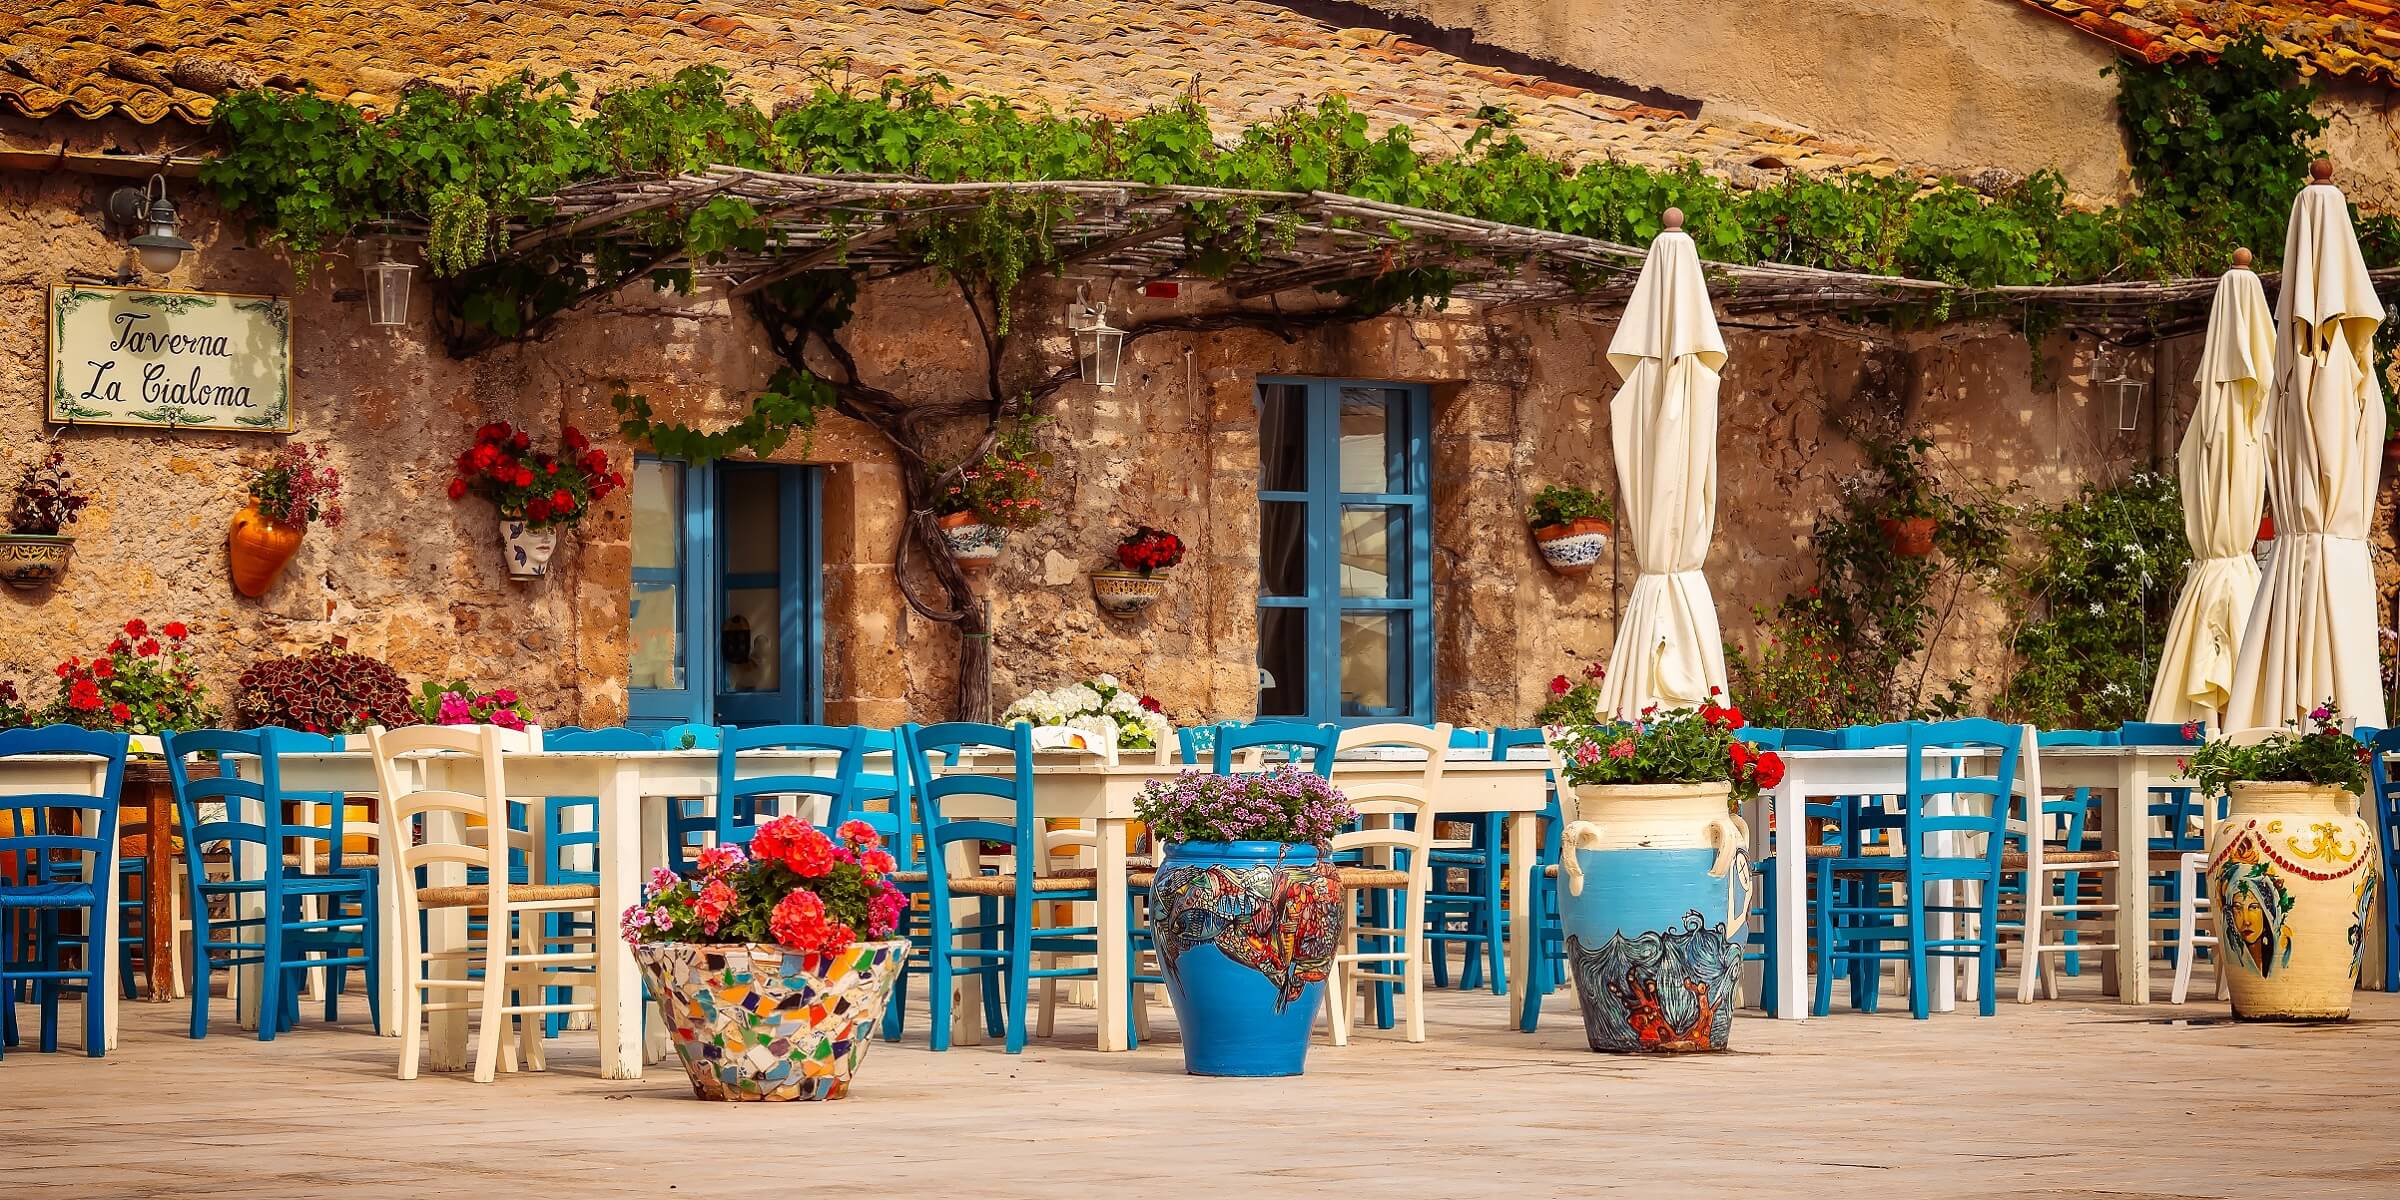 Genießen Sie auf Ihrer Singlereise zyprische Spezialitäten in einer Taverne